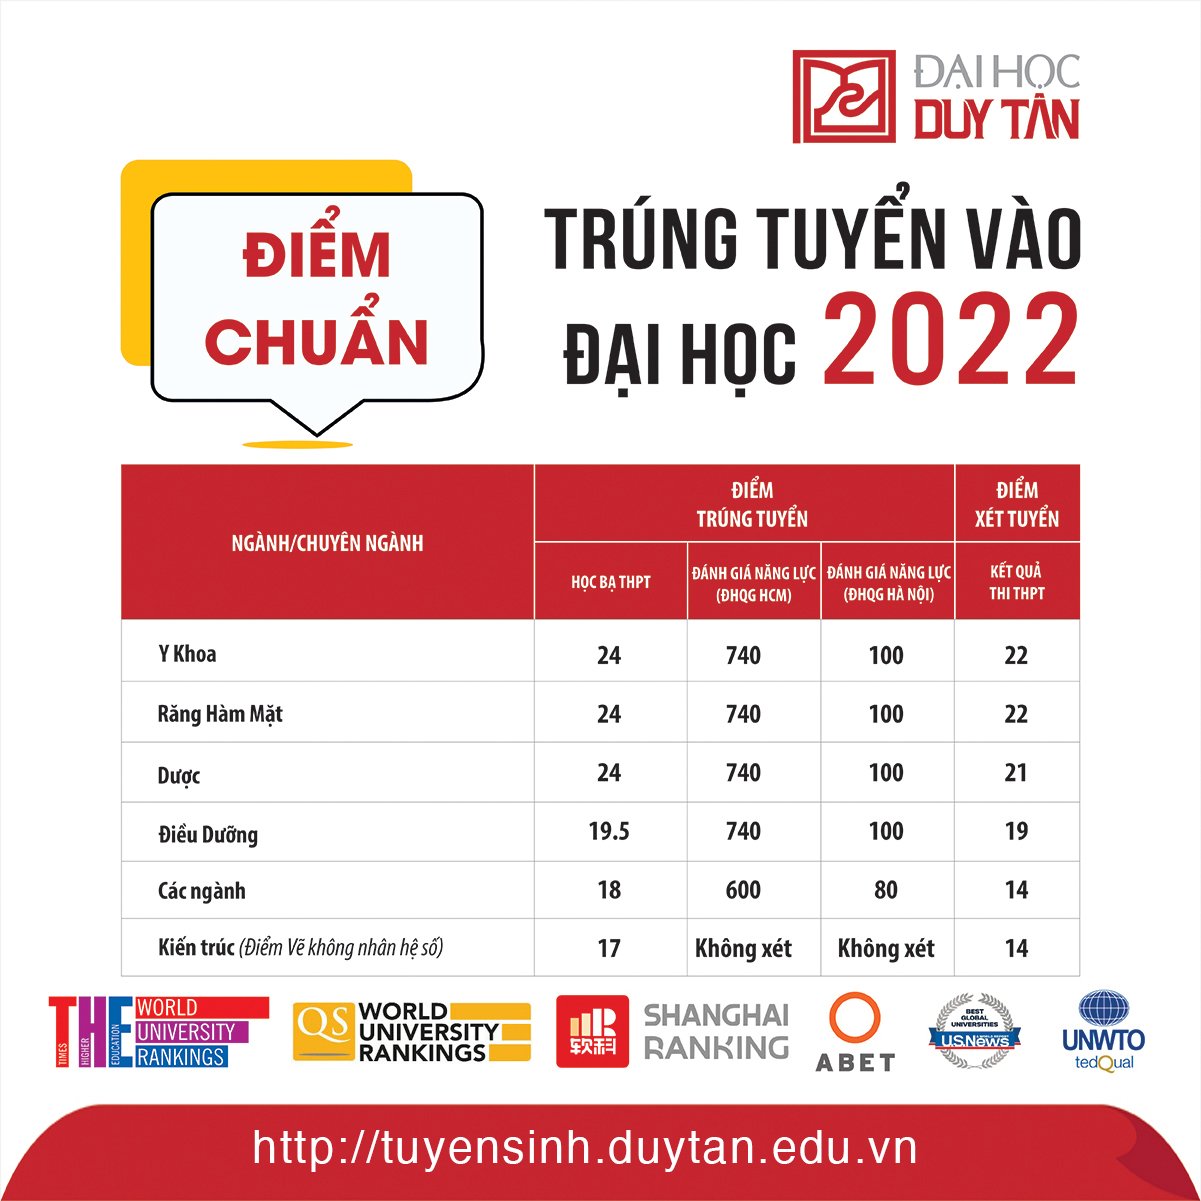 Thông báo điểm chuẩn trúng tuyển/xét tuyển Đại học Duy Tân năm 2022 2-8-2022-13-51-16-64